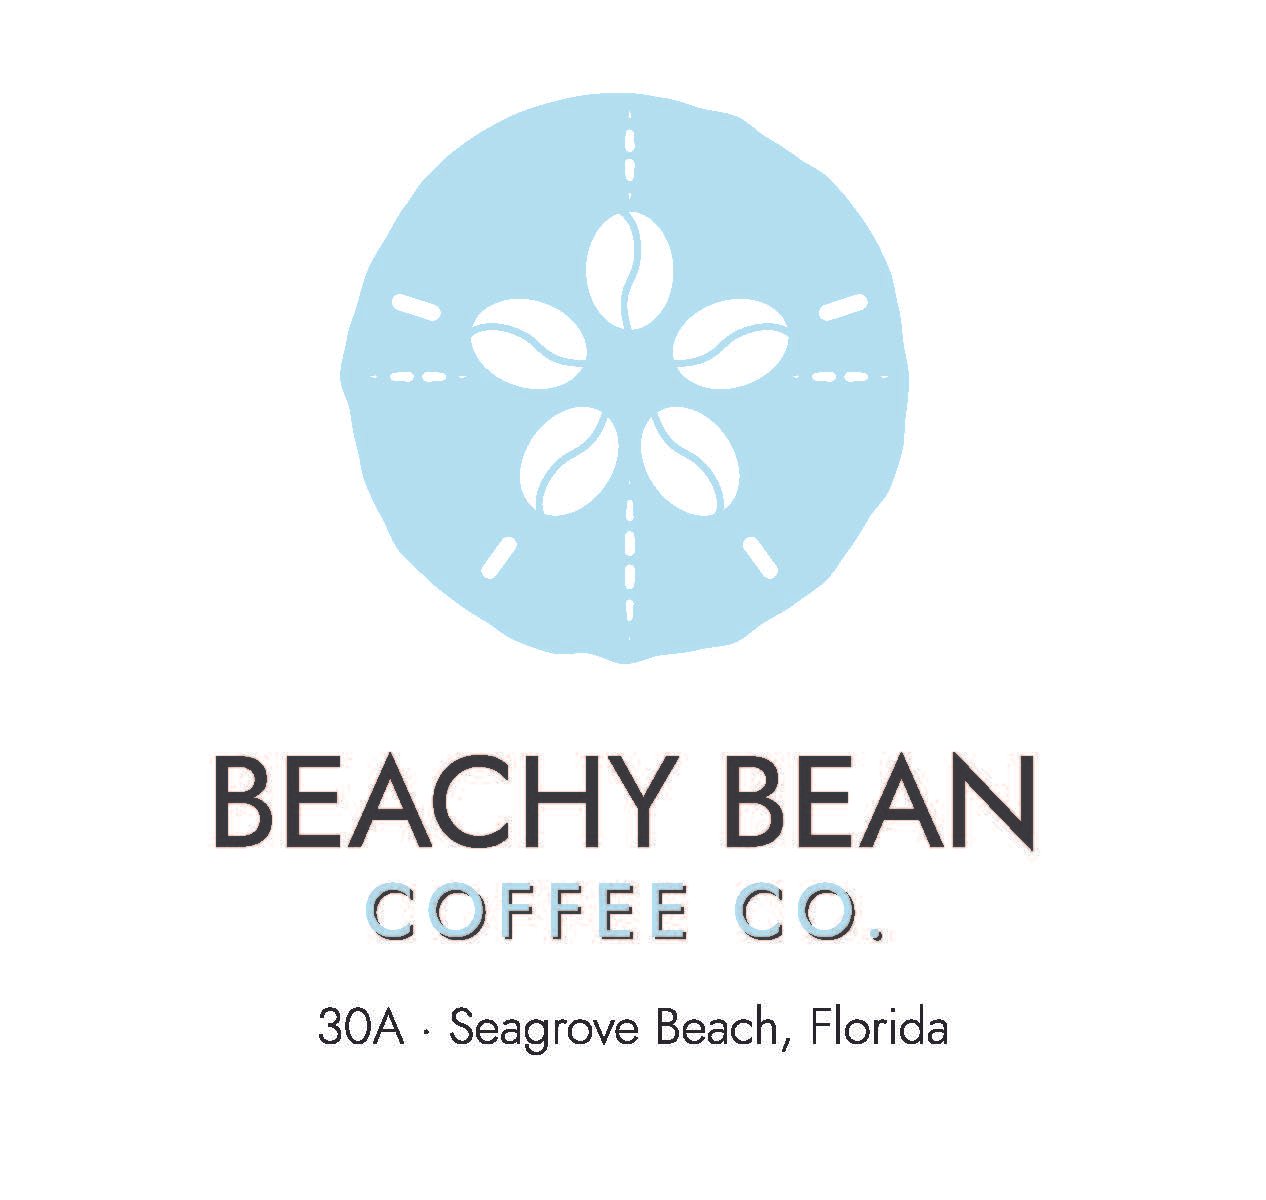 Beachy Bean Coffee Co.